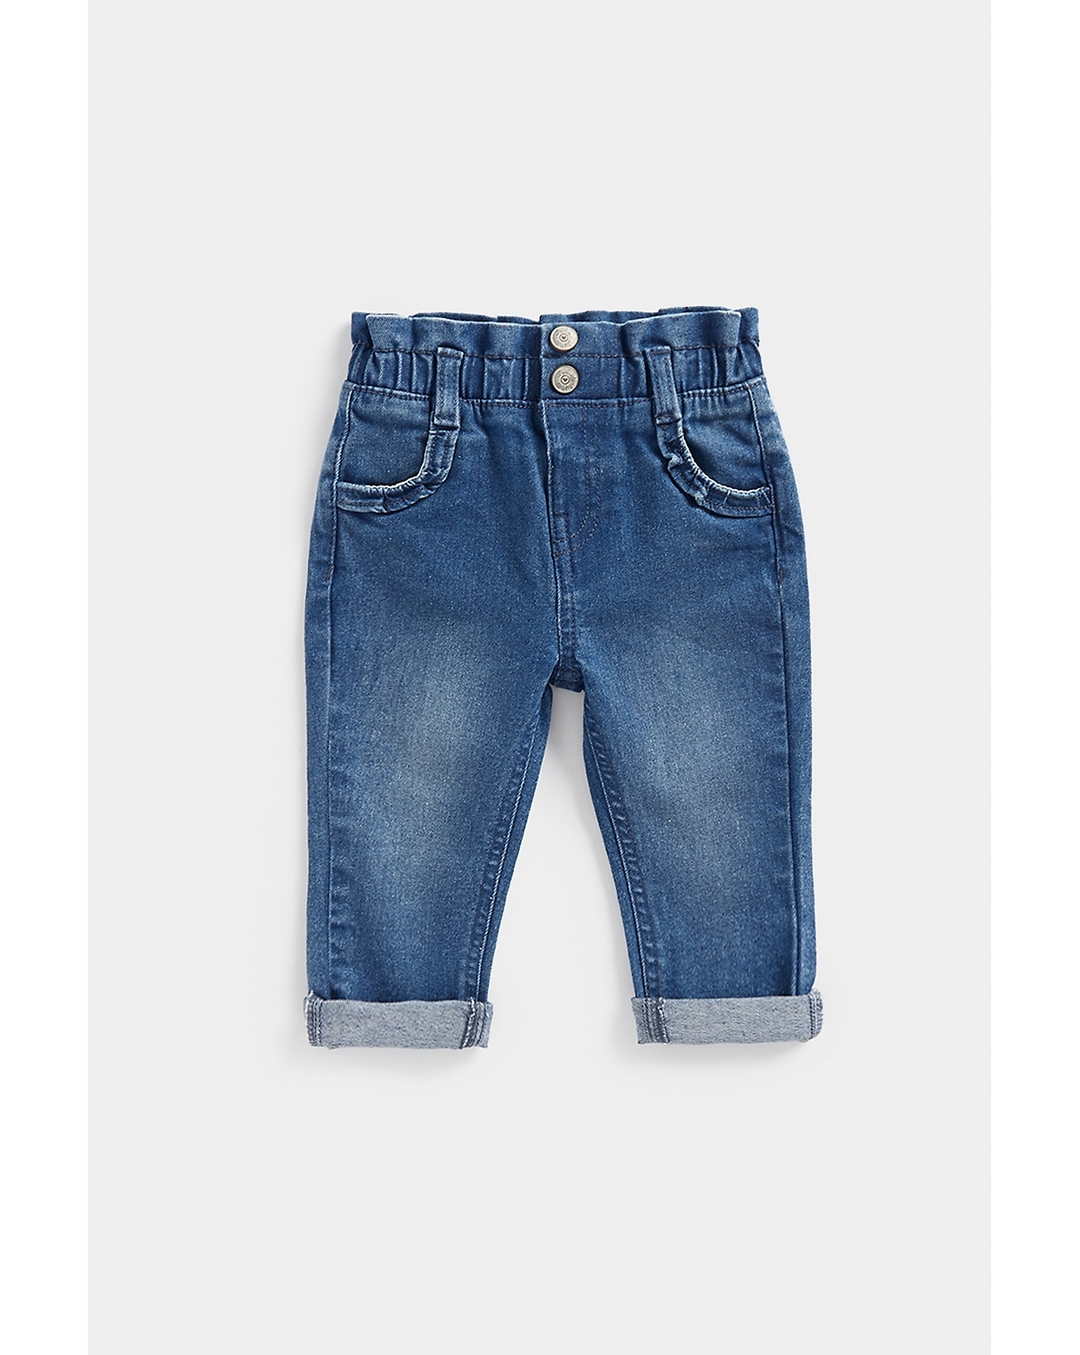 Buy Girls Blue Skinny Fit Jeans Online - 758340 | Allen Solly